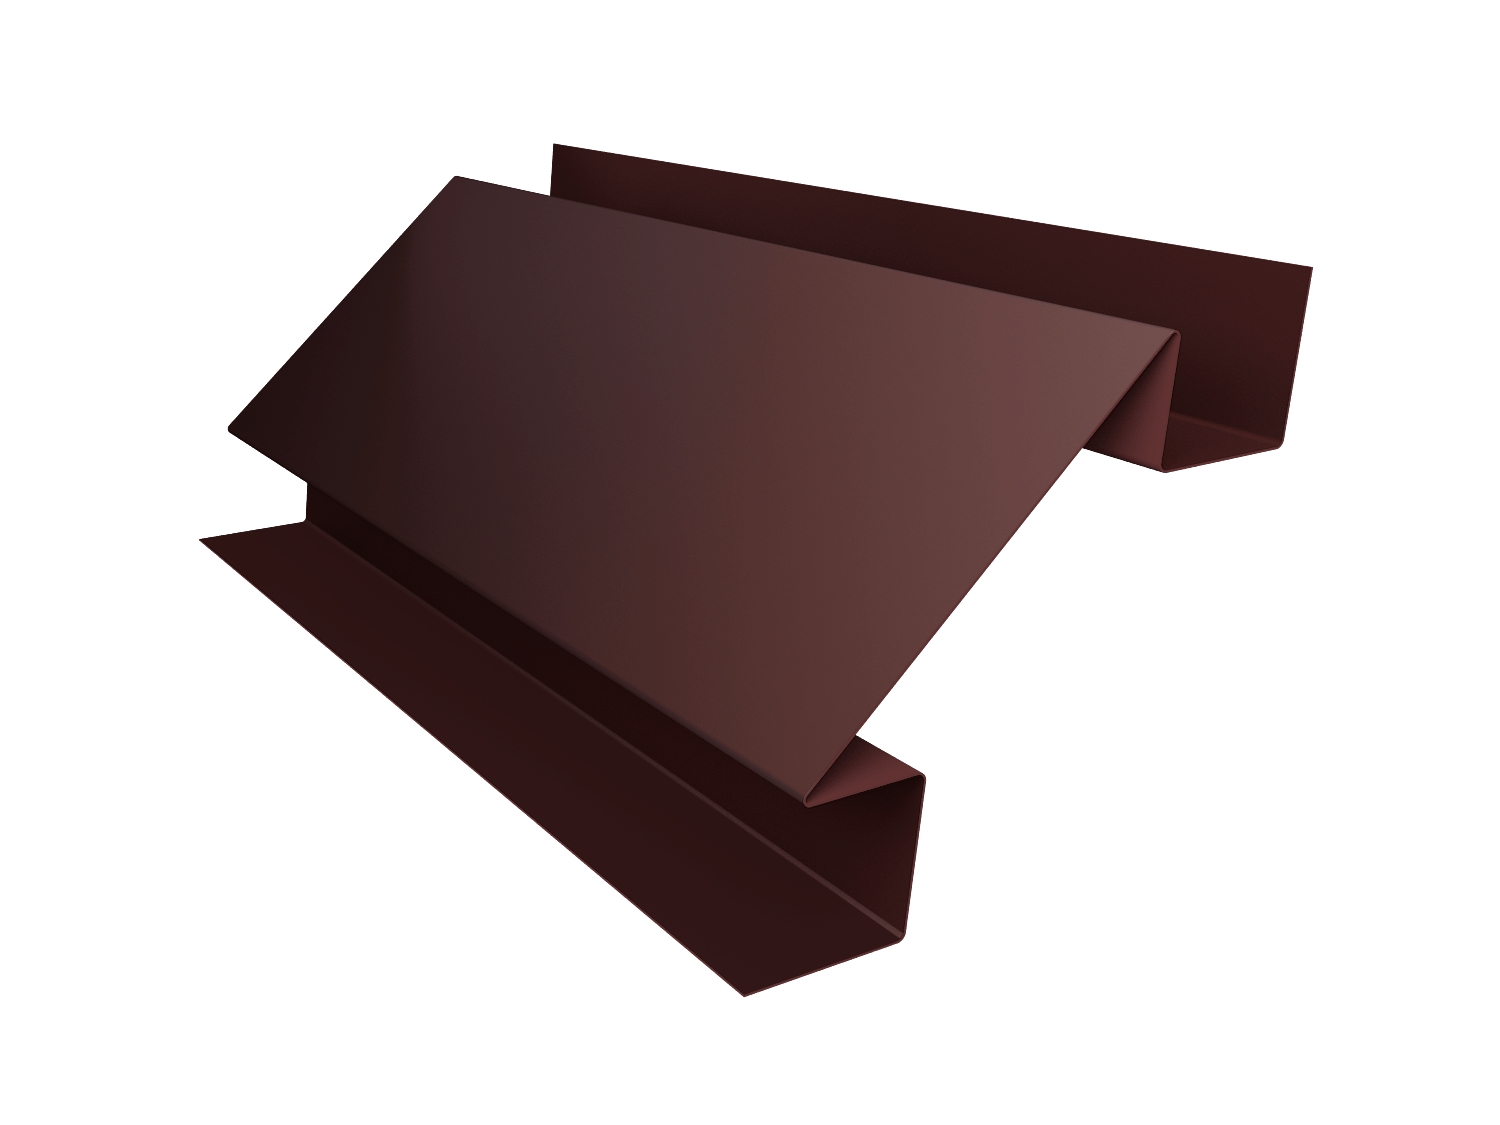 Планка угла внутреннего сложного Экобрус GreenCoat Pural с пленкой RR 887 шоколадно-коричневый (RAL 8017 шоколад)